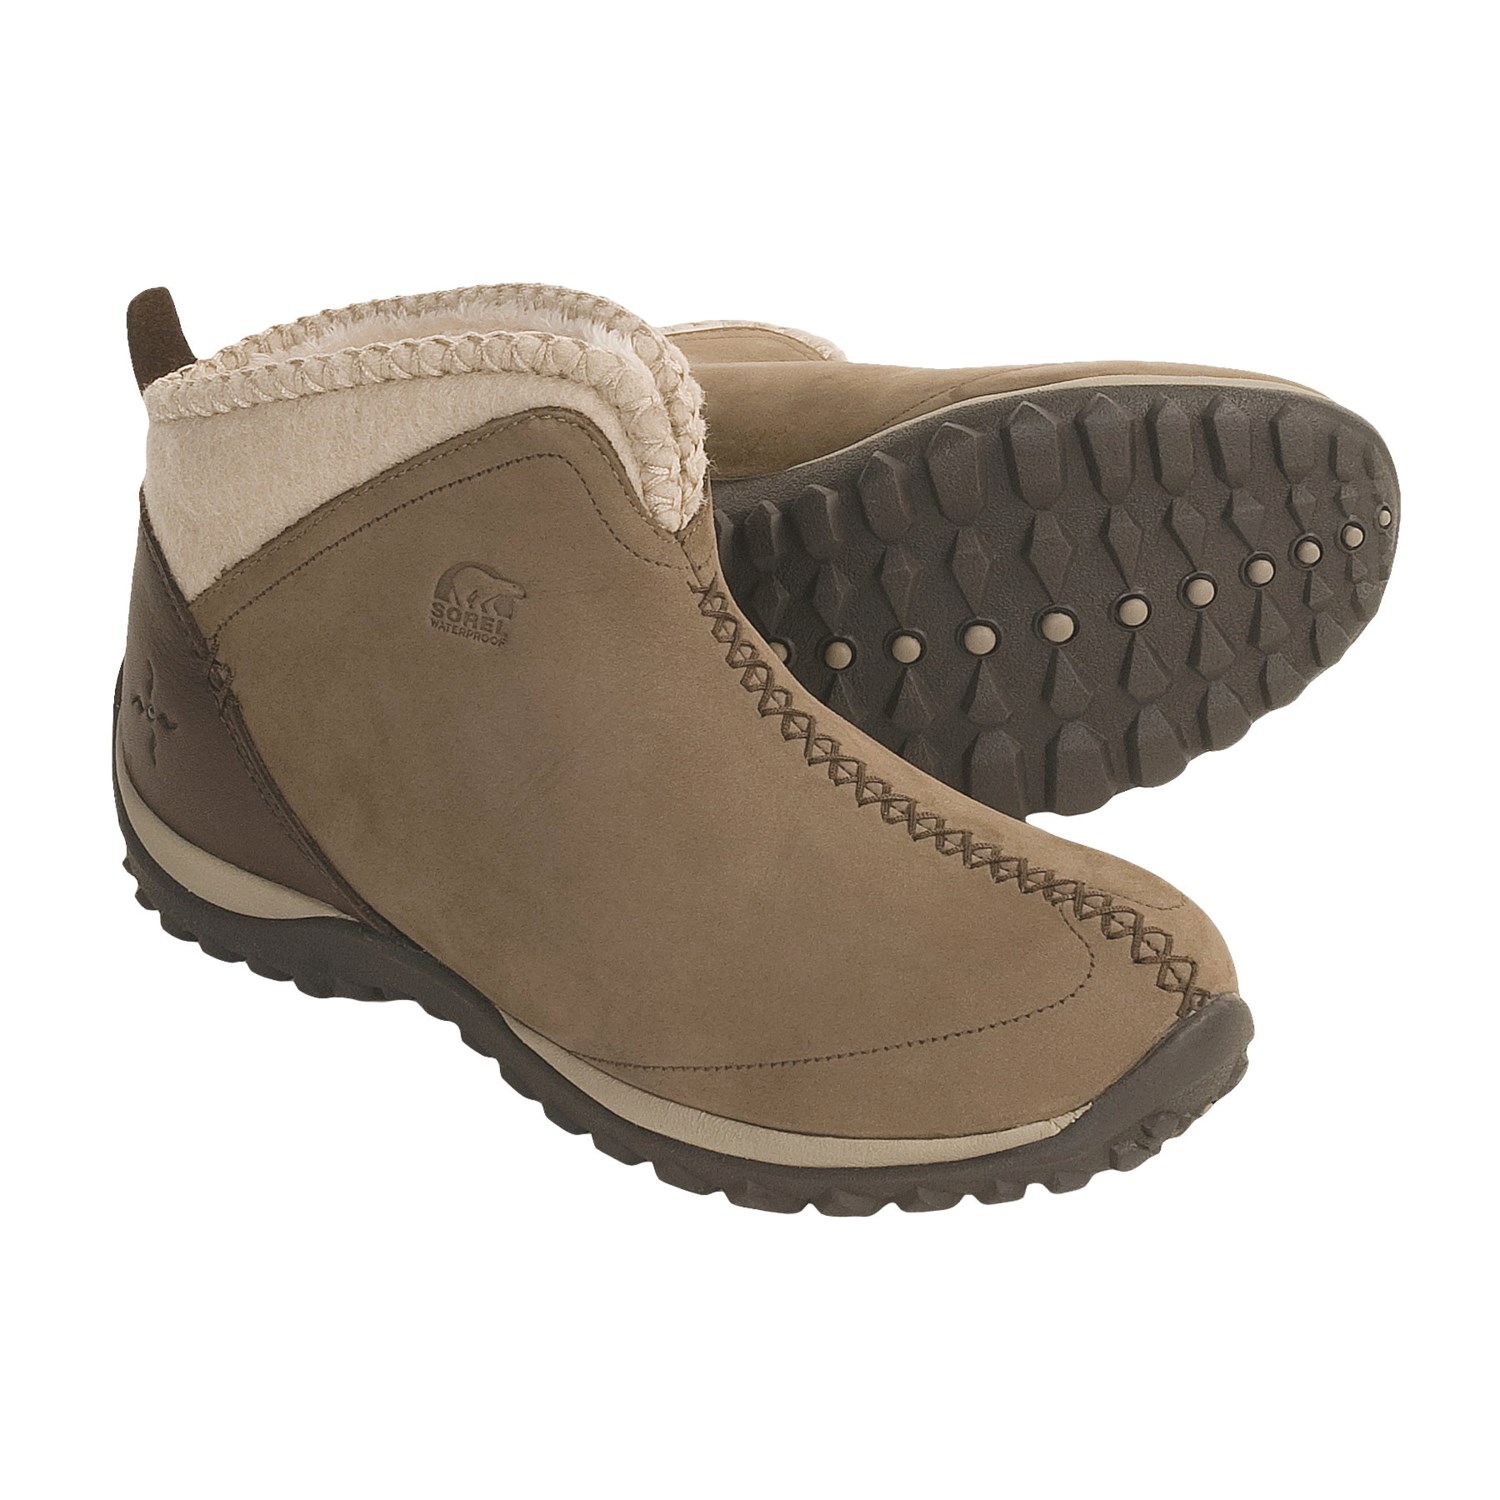 Sorel Joliette Winter Shoes - Waterproof Insulated (For Women) in Mud